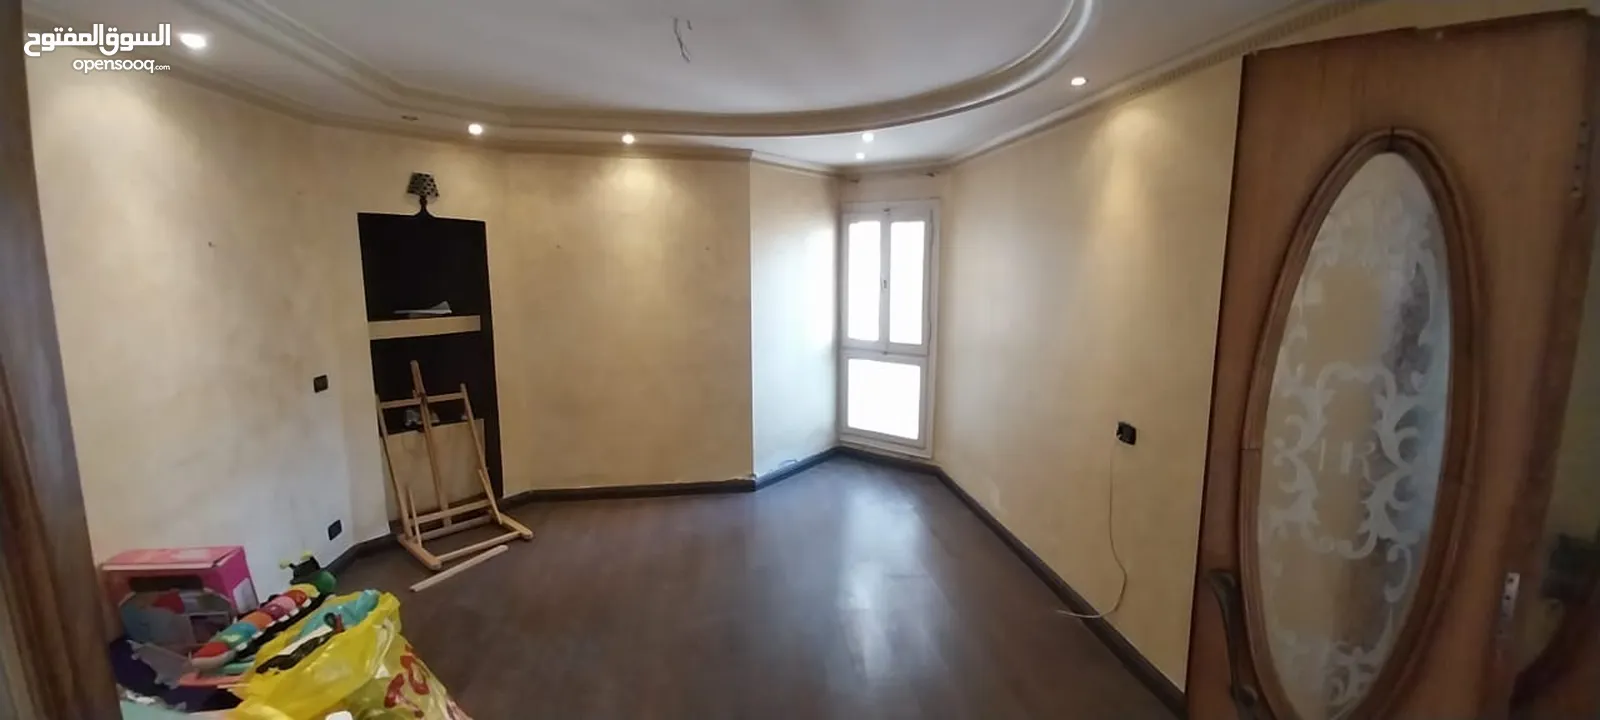 شقة مميزة للإيجار الإداري و السكني 245م سموحة "تاني نمرة من شارع فوزي معاذ" 25,000ج شهرياً